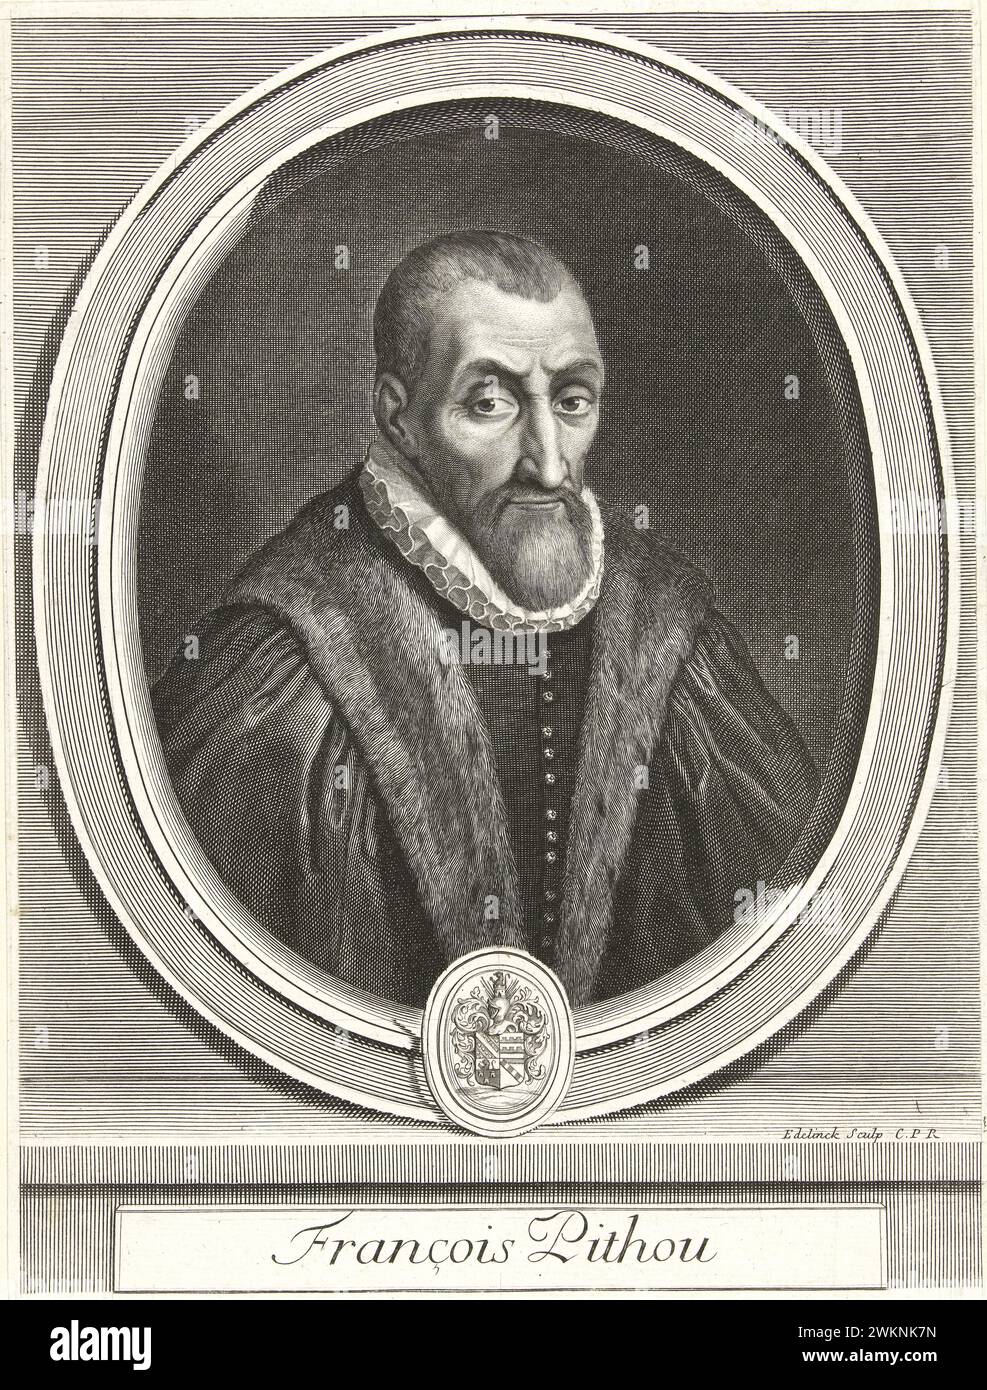 1585 c., FRANCIA: Il giurista, storico e scrittore italiano Francesco PITHOU ( 1543 - 1621 ), giovane seccatura di Pierre Pithou ( 1543 - 1596 ). Ritratto inciso da Gerard Edelinck ( 1666 - 1707 ), pubblicato nel 1700 c., Parigi . - STORIA - FOTO STORICO - STORICO - SCRITTORE - SCRITTORE - LETTERATURA - LETTERATURA - giureconsulto - GIURISTA - LEGGE - LAY - nobili - nobiltà francese - nobiltà francese - FRANCIA - INCISIONE - INCISIONE - ILLUSTRAZIONE - colletto - colletto - colletto - colletto - colletto - GORGIERA - pizzo - Pizzo - barba - barba - pelliccia - pelliccia --- Archivio GBB Foto Stock